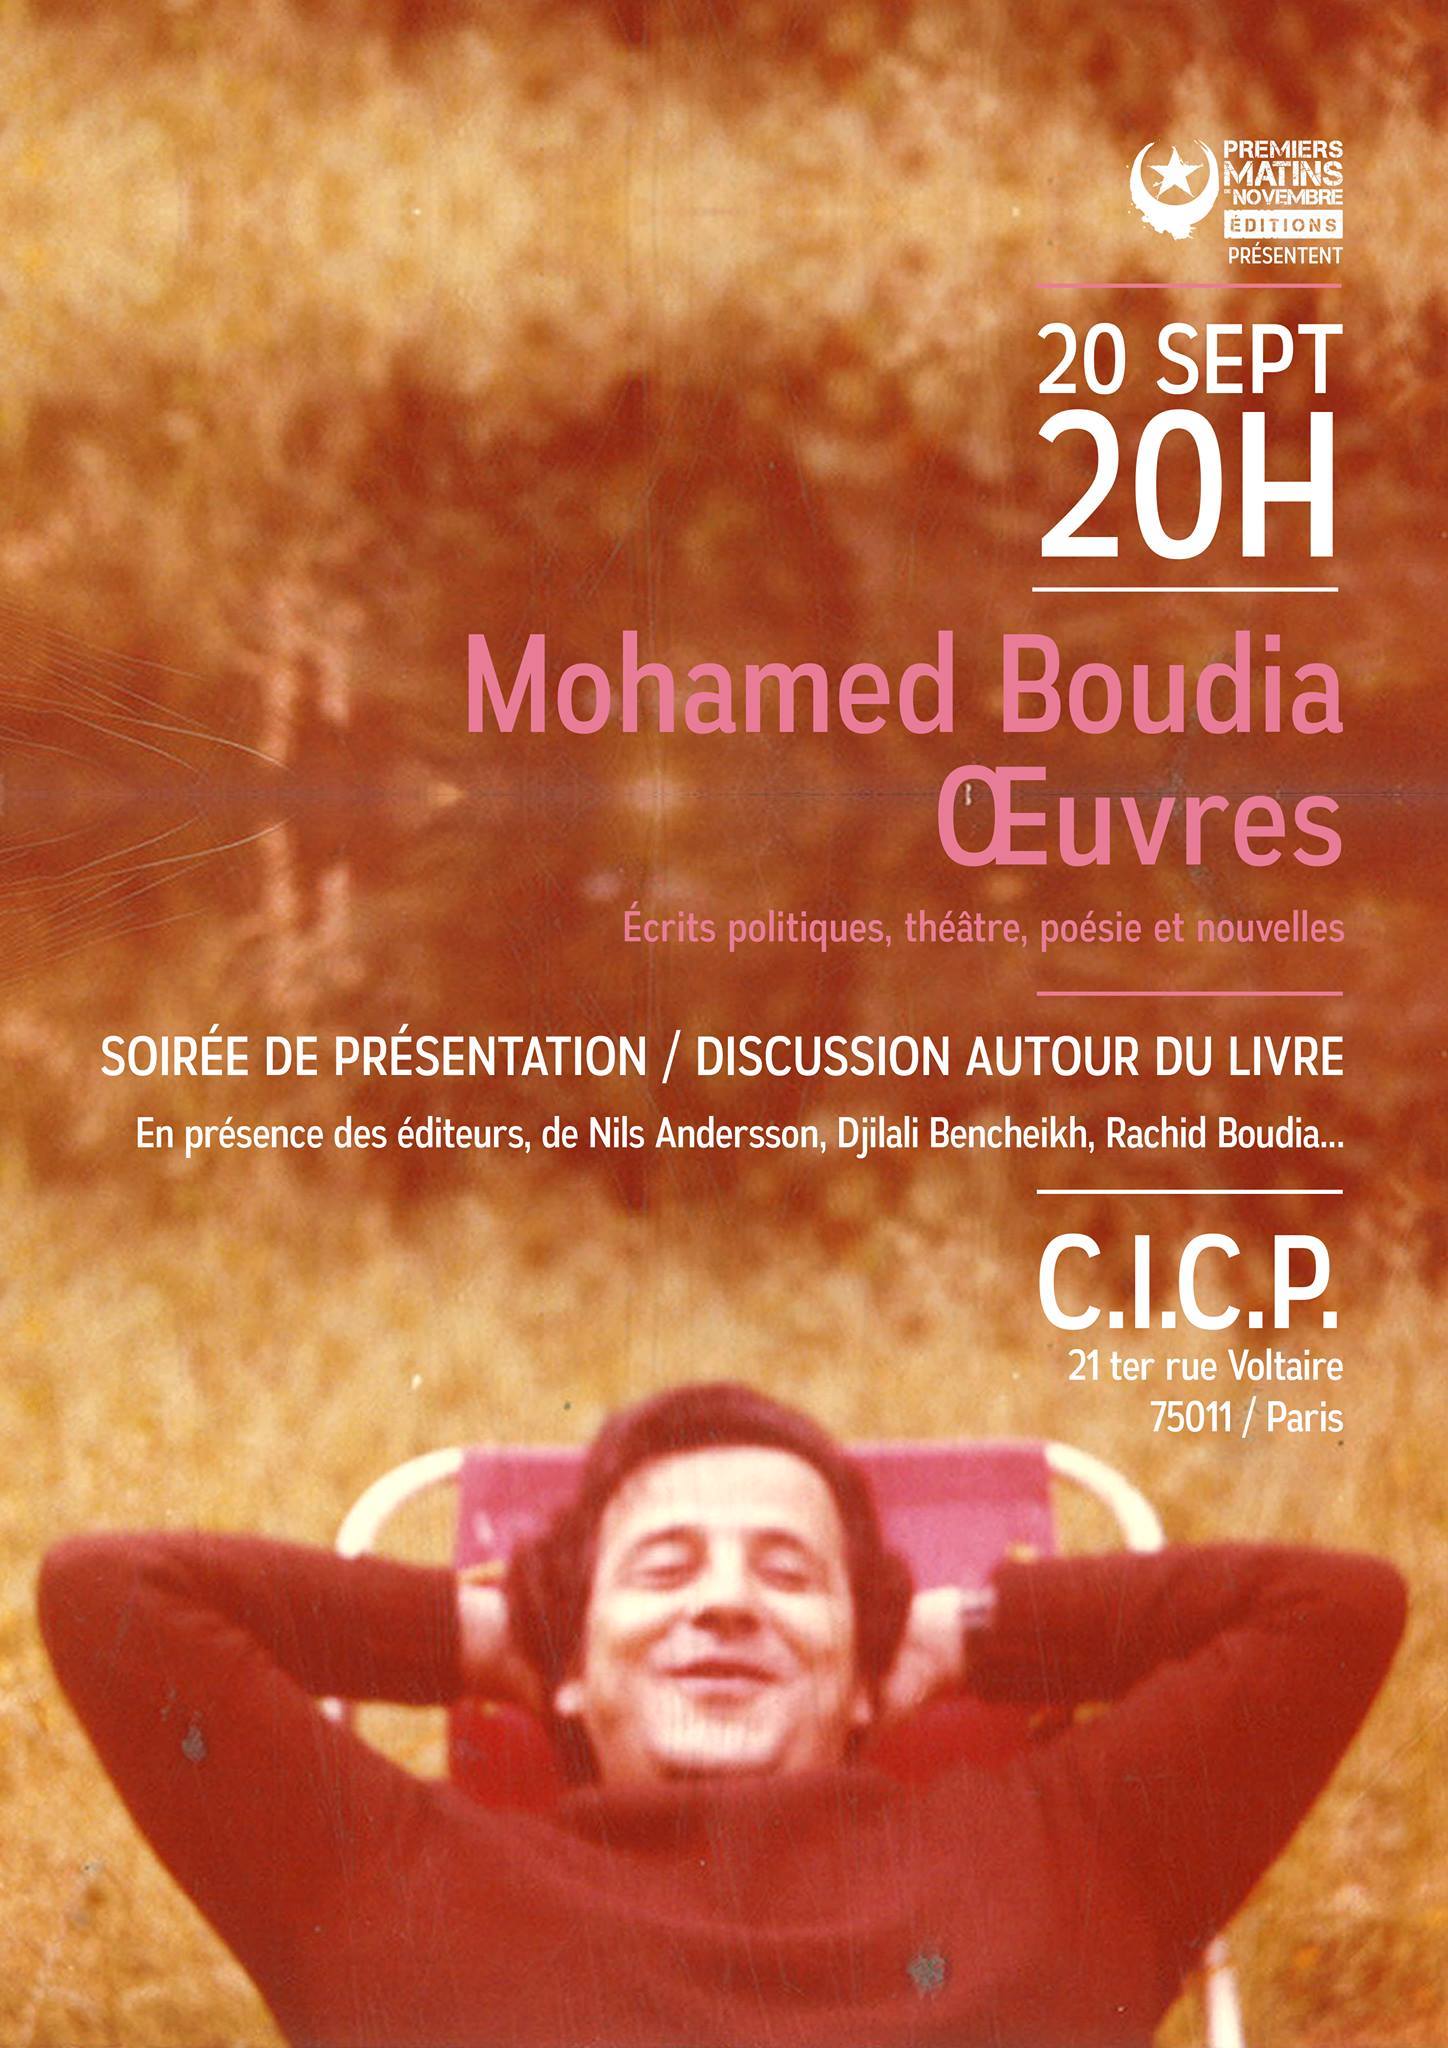 Soirée de présentation du livre "Mohamed Boudia - Oeuvres" le 20 septembre 2017 à Paris